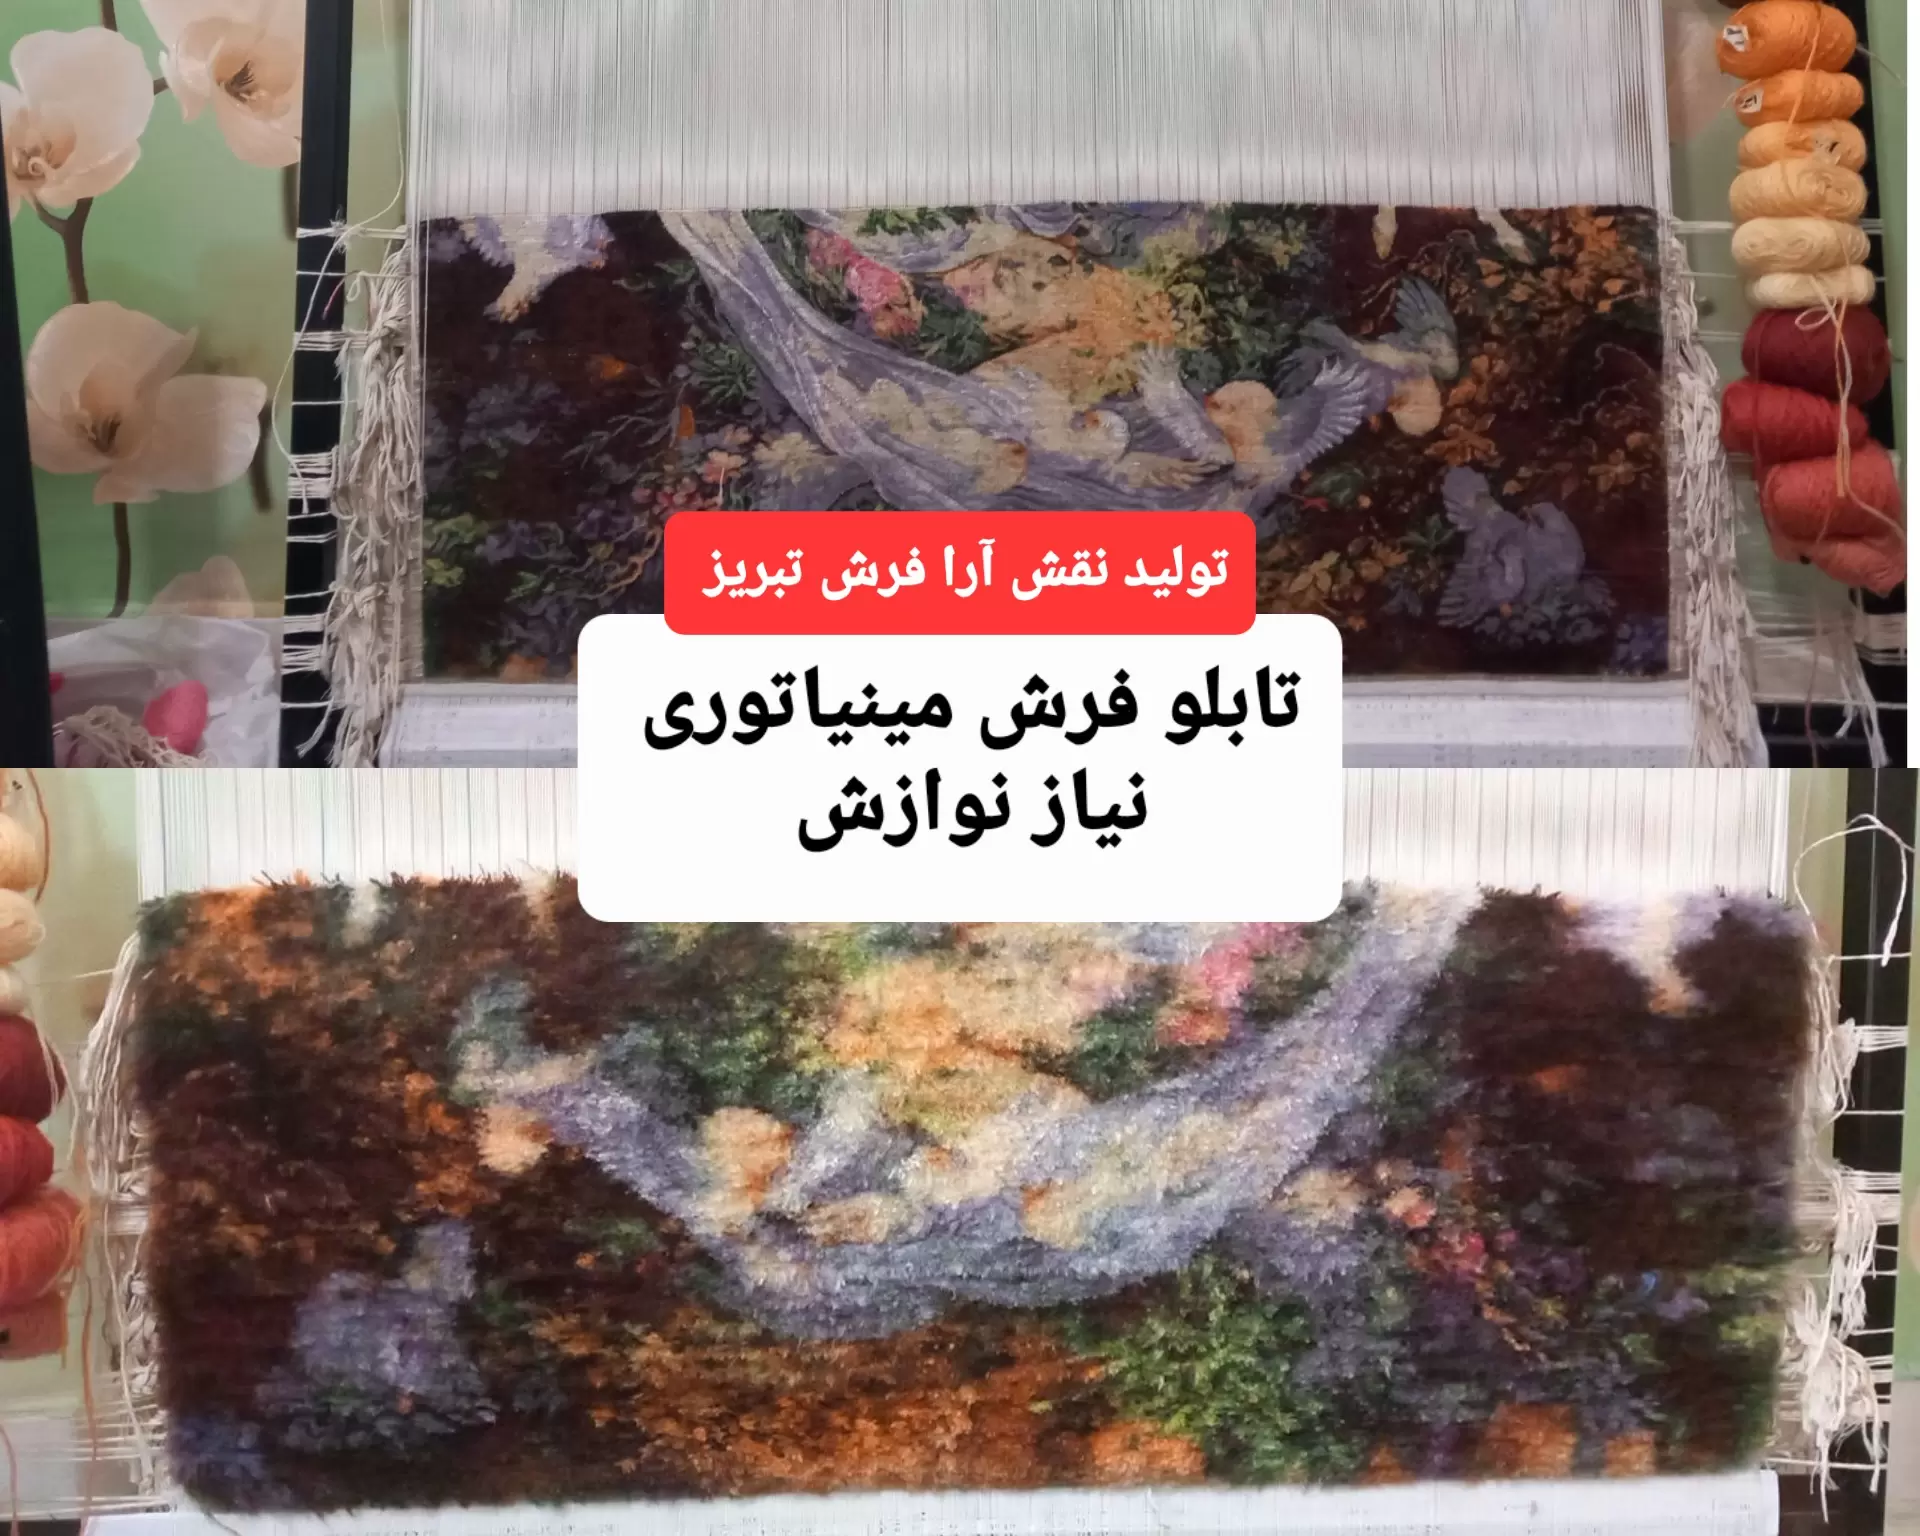 عکس تابلو فرش نیاز نوازش بصورت بافته شده با نخ و نقشه تبریز + بررسی کیفیت 